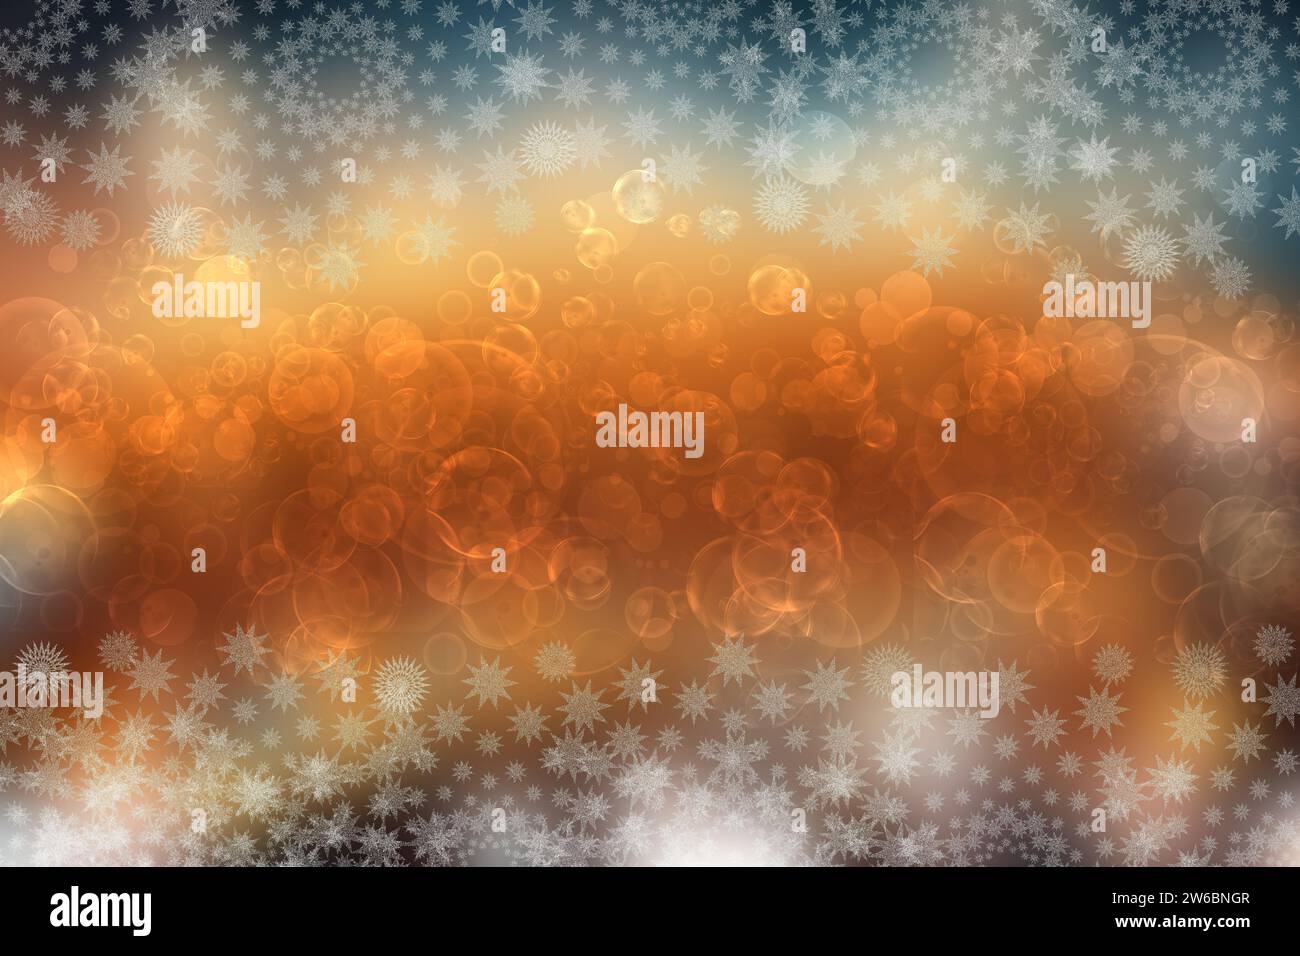 Résumé d'une fête de Noël ou bonne Année aux couleurs et texture background rose jaune d'or et des étoiles lumières bokeh flou. L'espace pour la conception. Banque D'Images